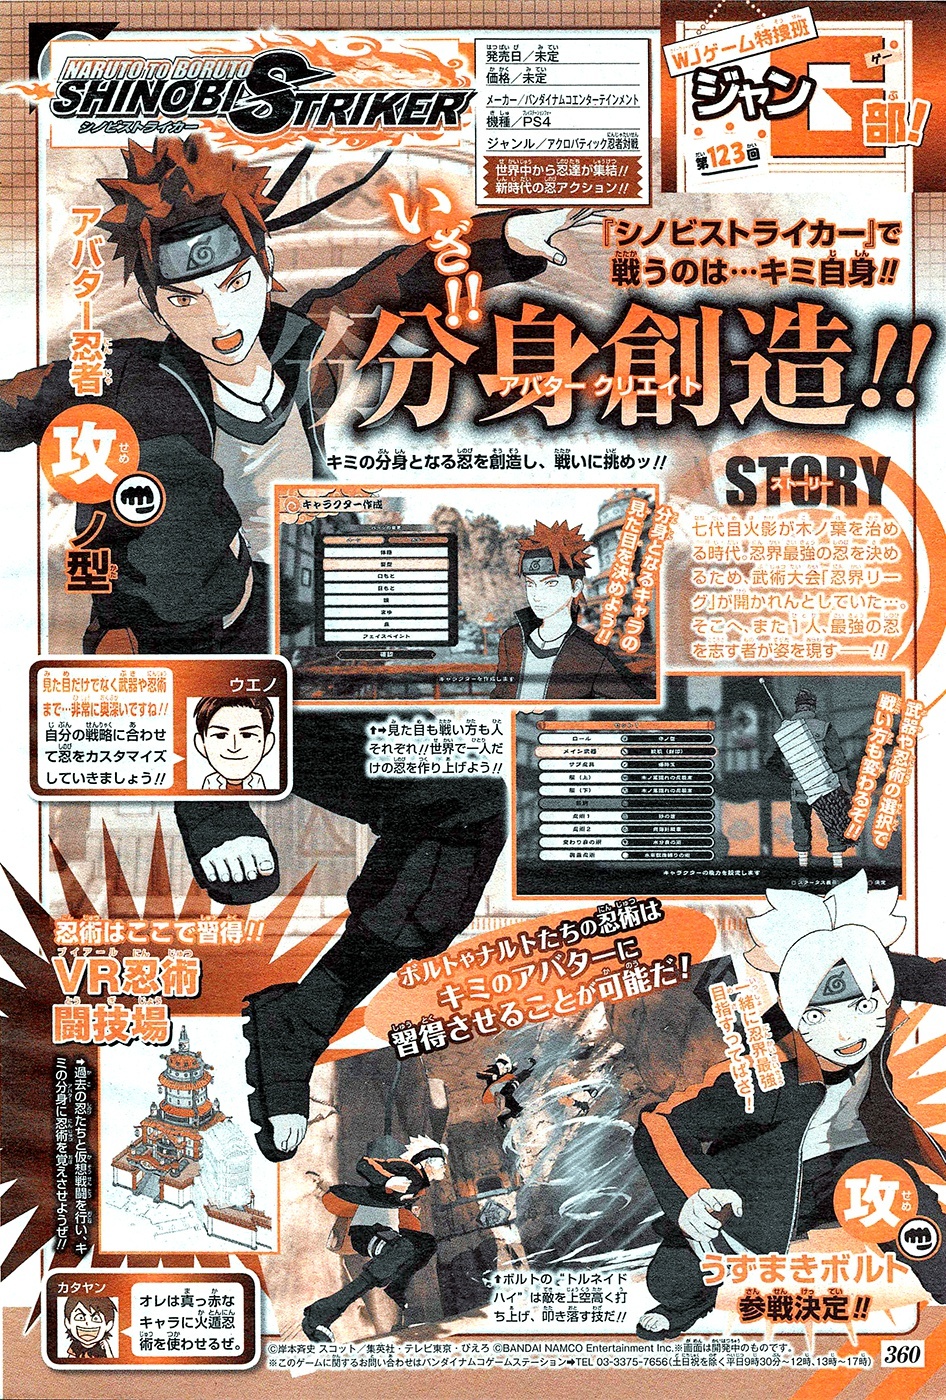 Naruto-to-Boruto-Shinobi-Striker-Scan_08-03-17.jpg